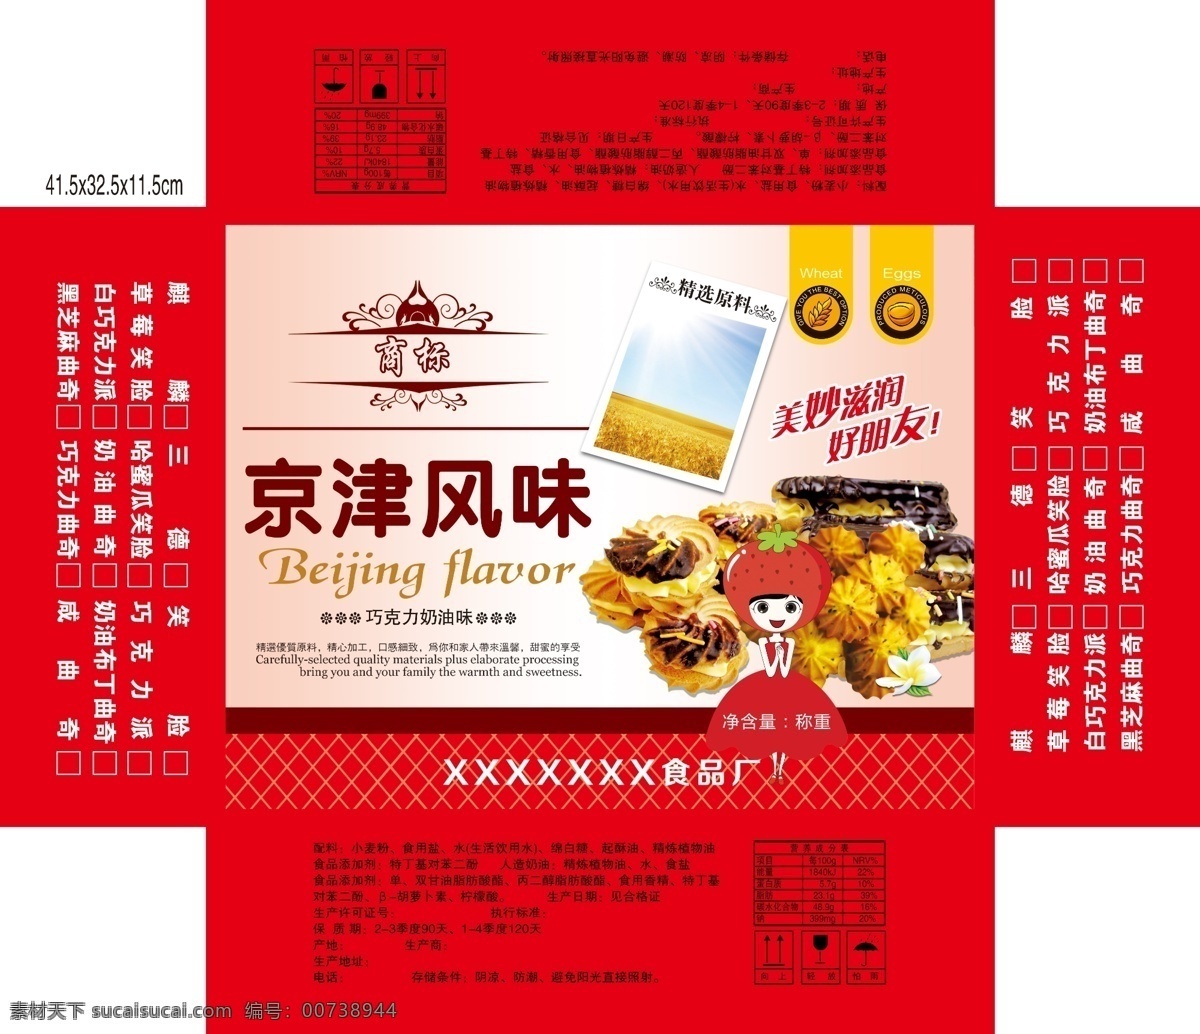 京津 风味 食品 包装设计 草莓卡通人 巧克力 曲奇饼干 巧克力饼干 食品扣盖